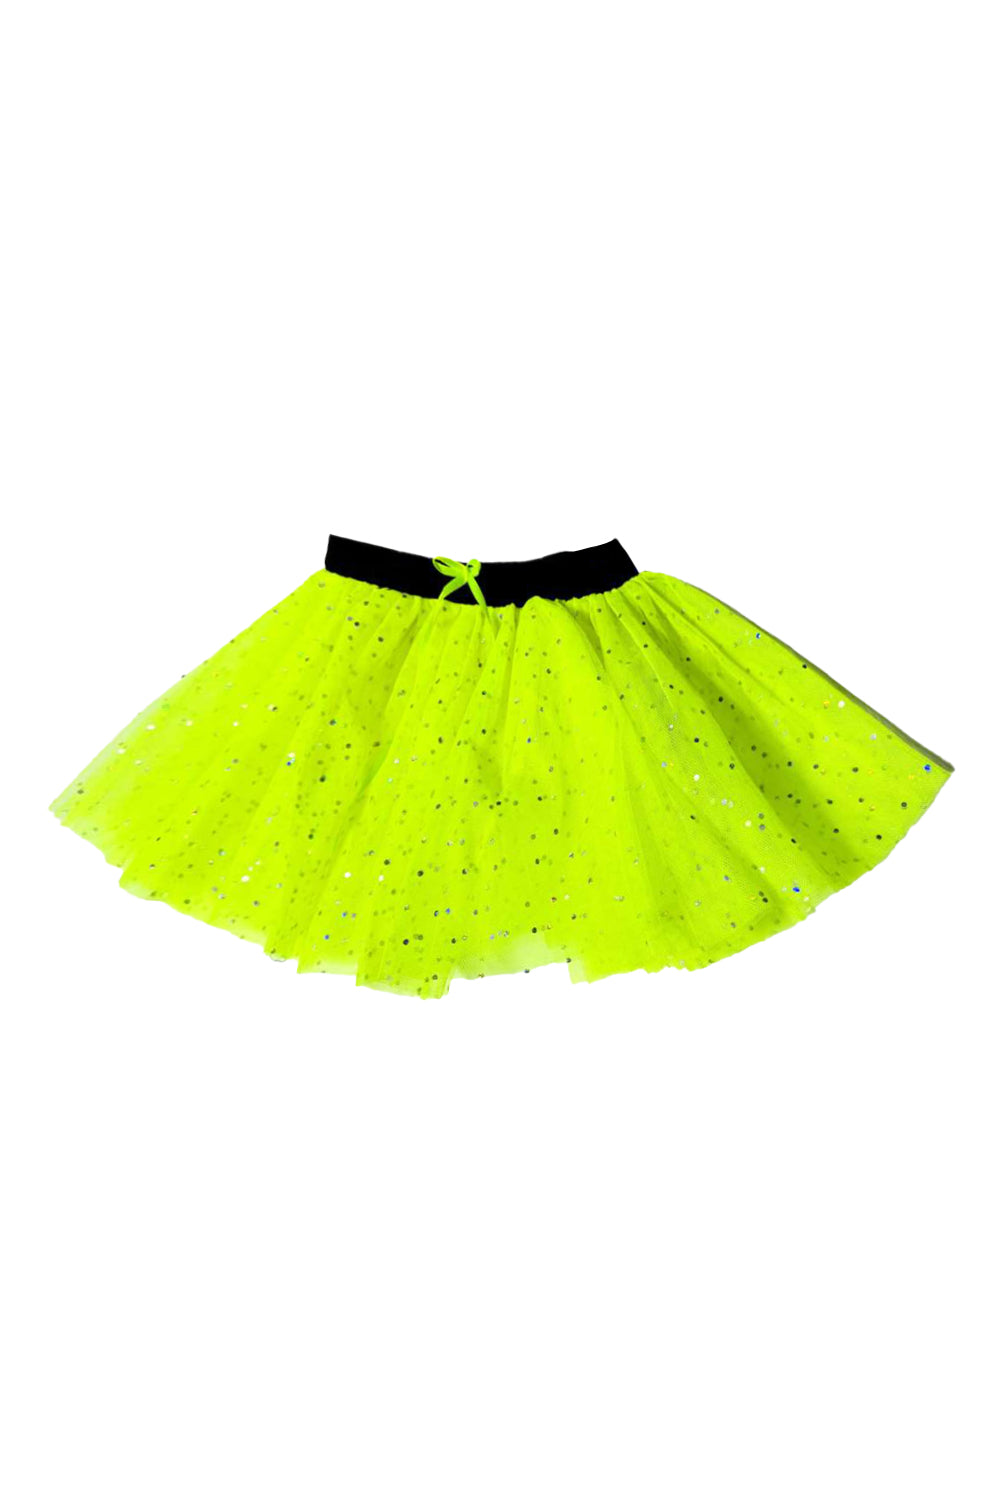 Adult 3 Layer Sequin Tutu Skirt Ballet Dance Wear